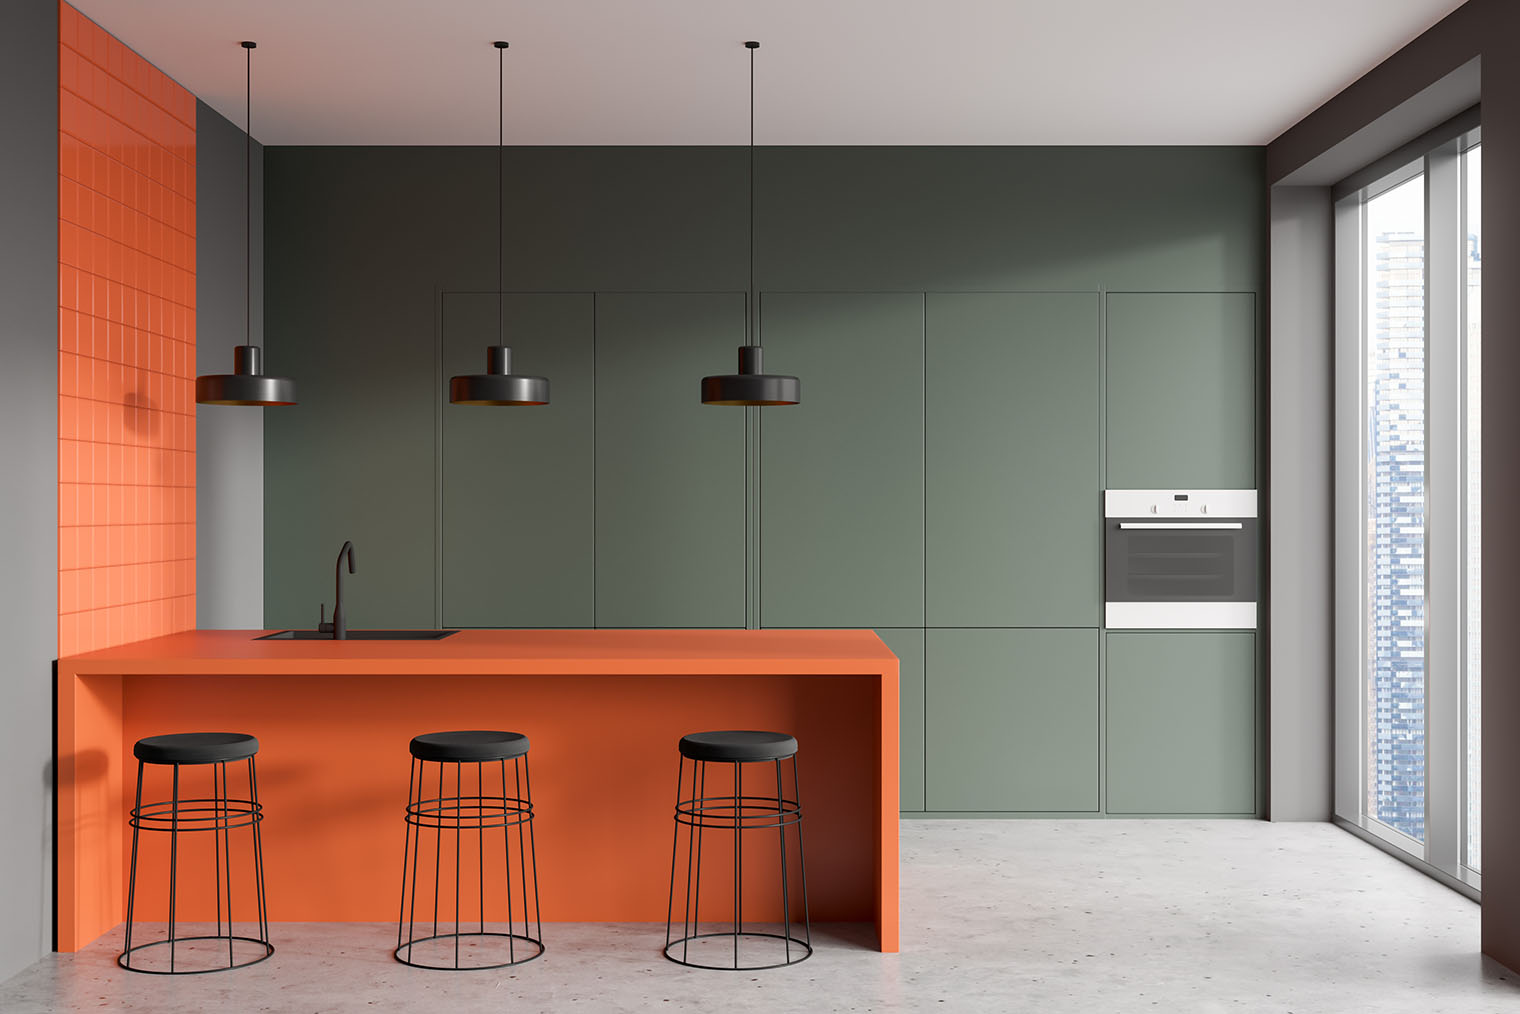 Подбор цвета столешницы к плитке — самая сложная история. Наверное, это будет даже дороже, чем полностью закрытый кухонный гарнитур. Фотография: ImageFlow / Shutterstock